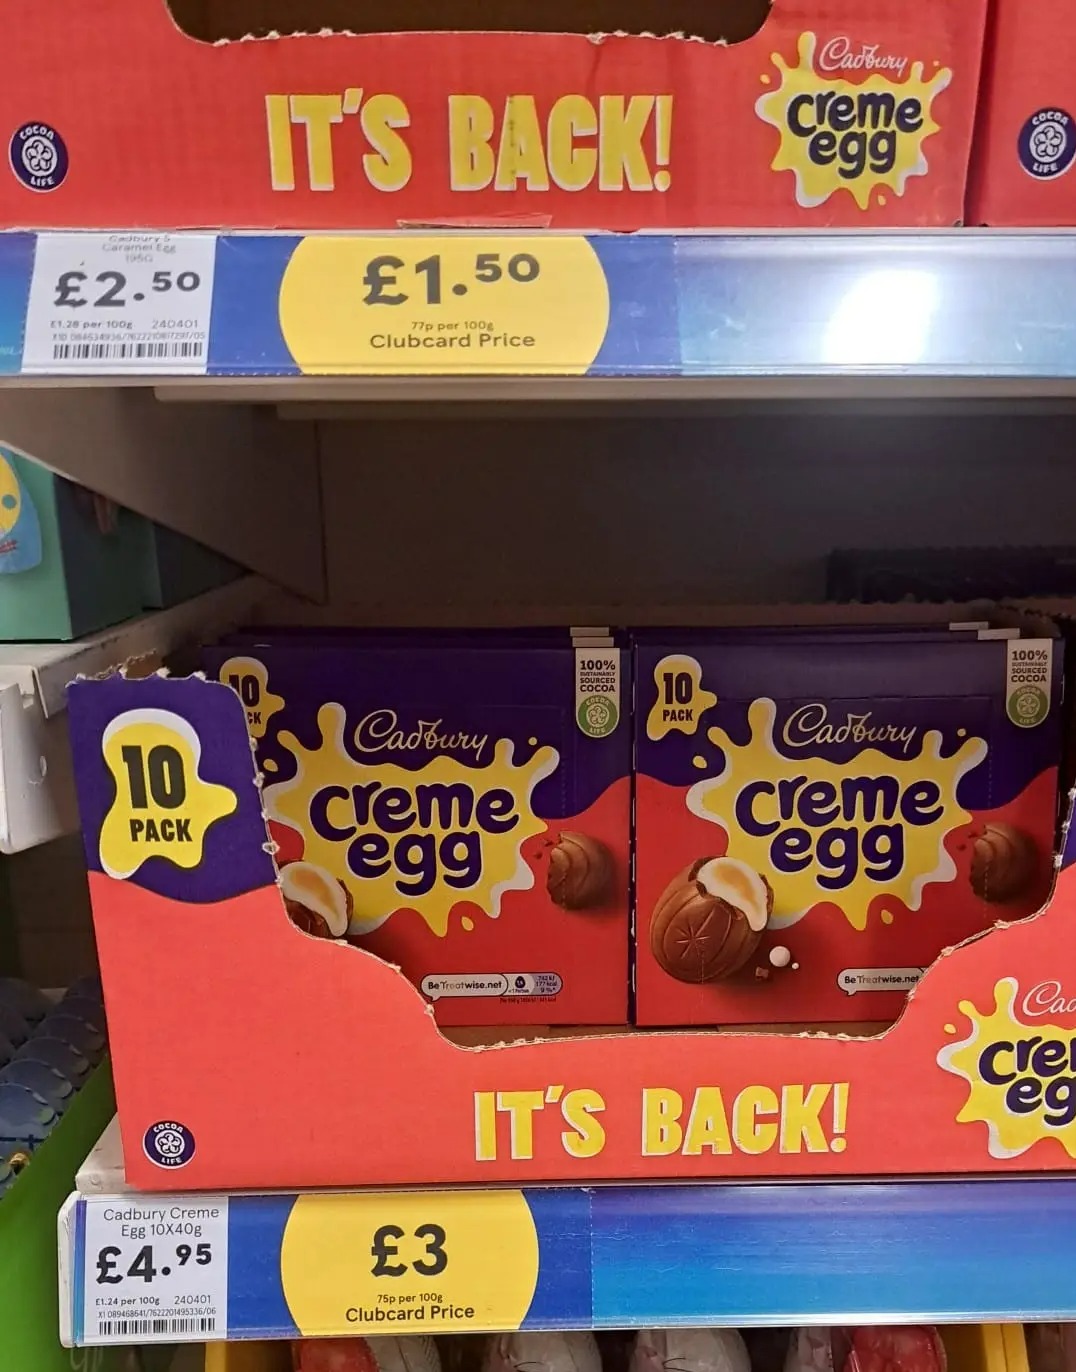 Der hilfreiche Schnappschuss, der online geteilt wurde, zeigte Schachteln mit Creme-Eiern zum Schnäppchenpreis